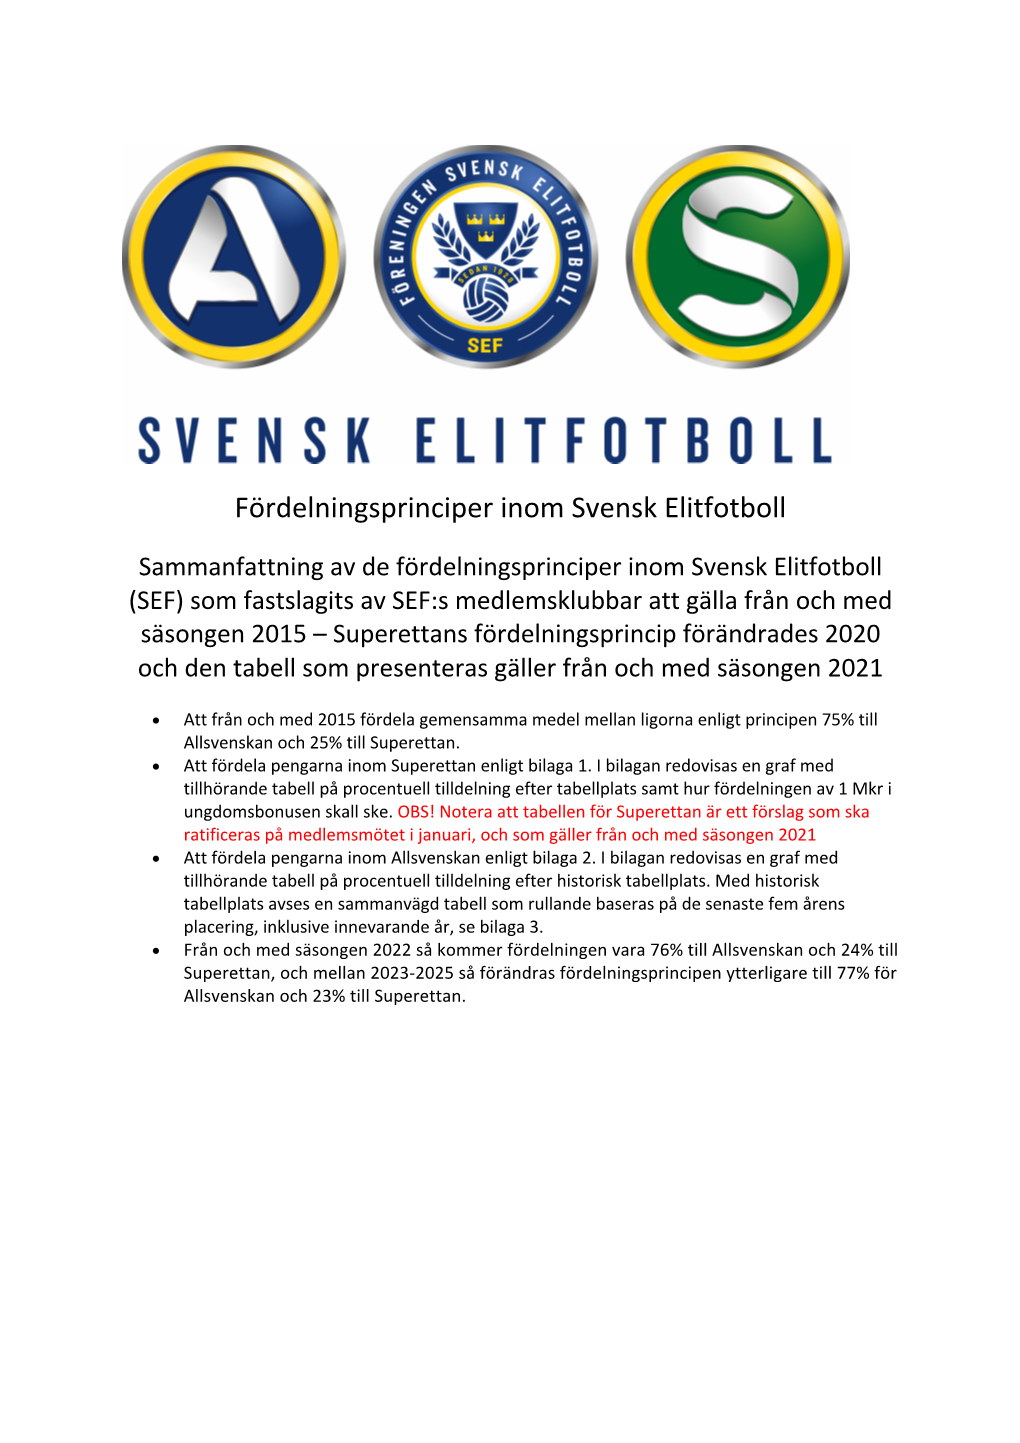 Fördelningsprinciper Inom Svensk Elitfotboll